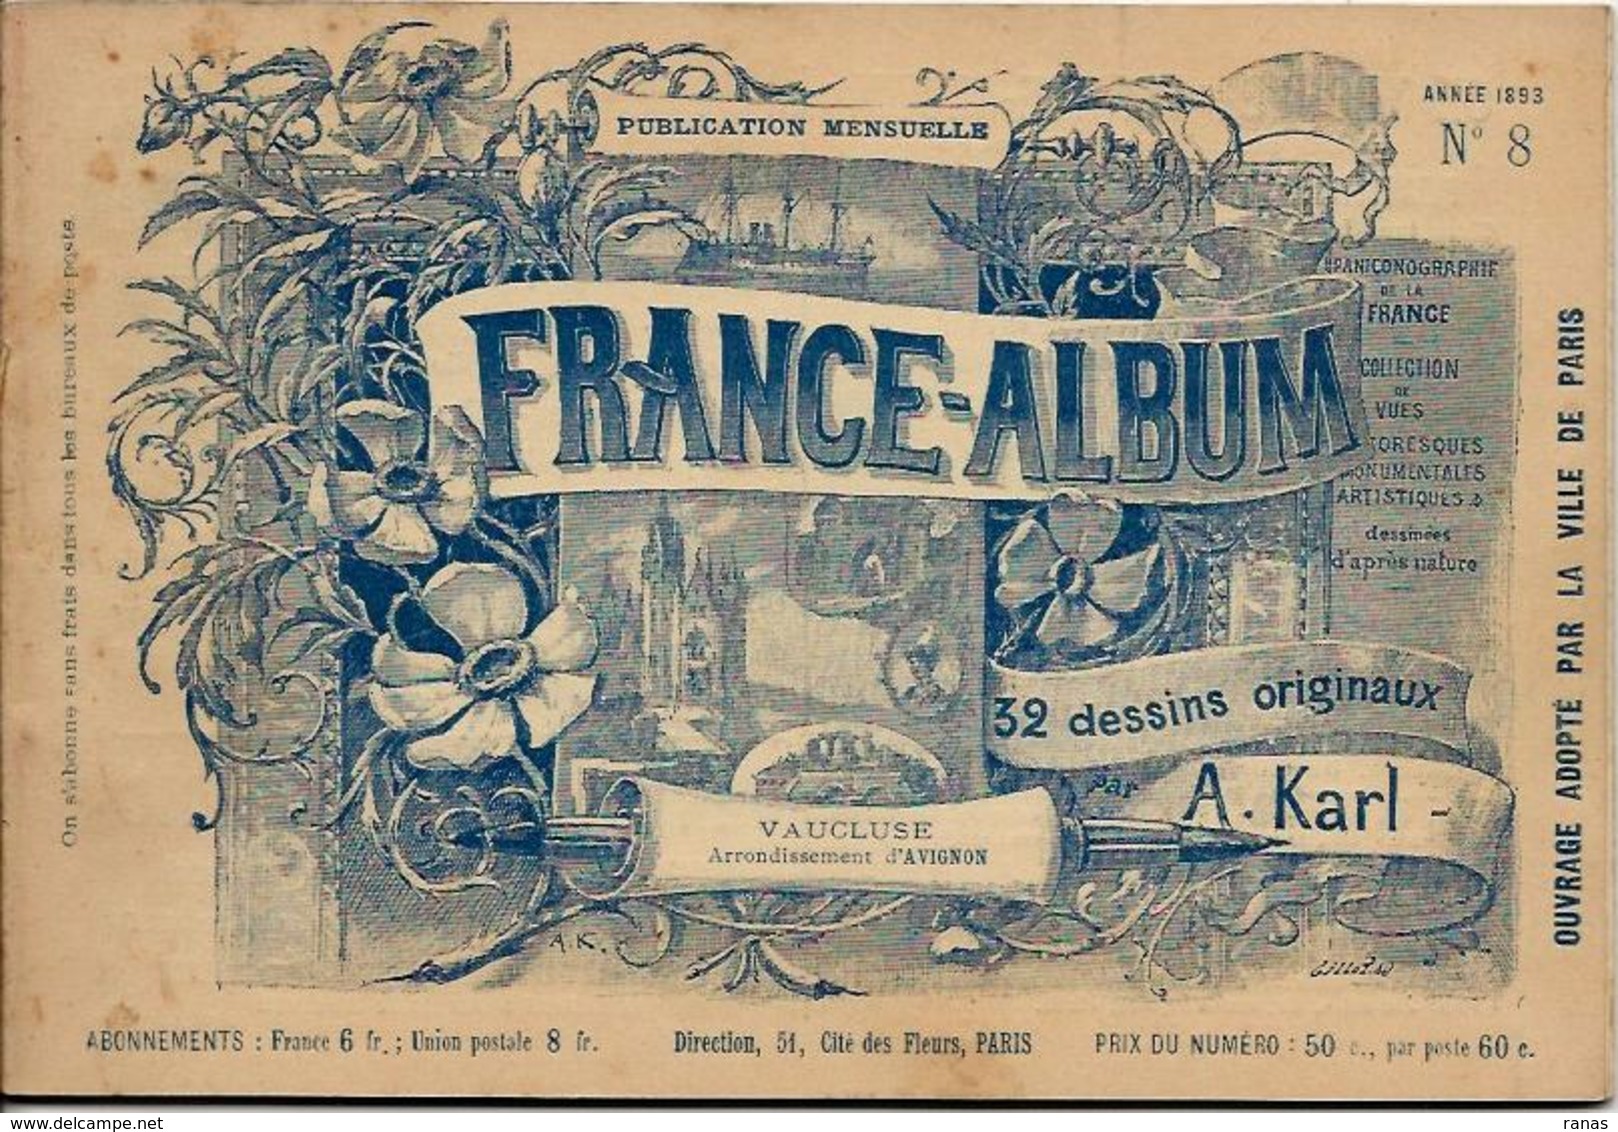 VAUCLUSE 84 France Album De A. KARL, Carte Gravures Texte Publicités 1893 - Dépliants Touristiques